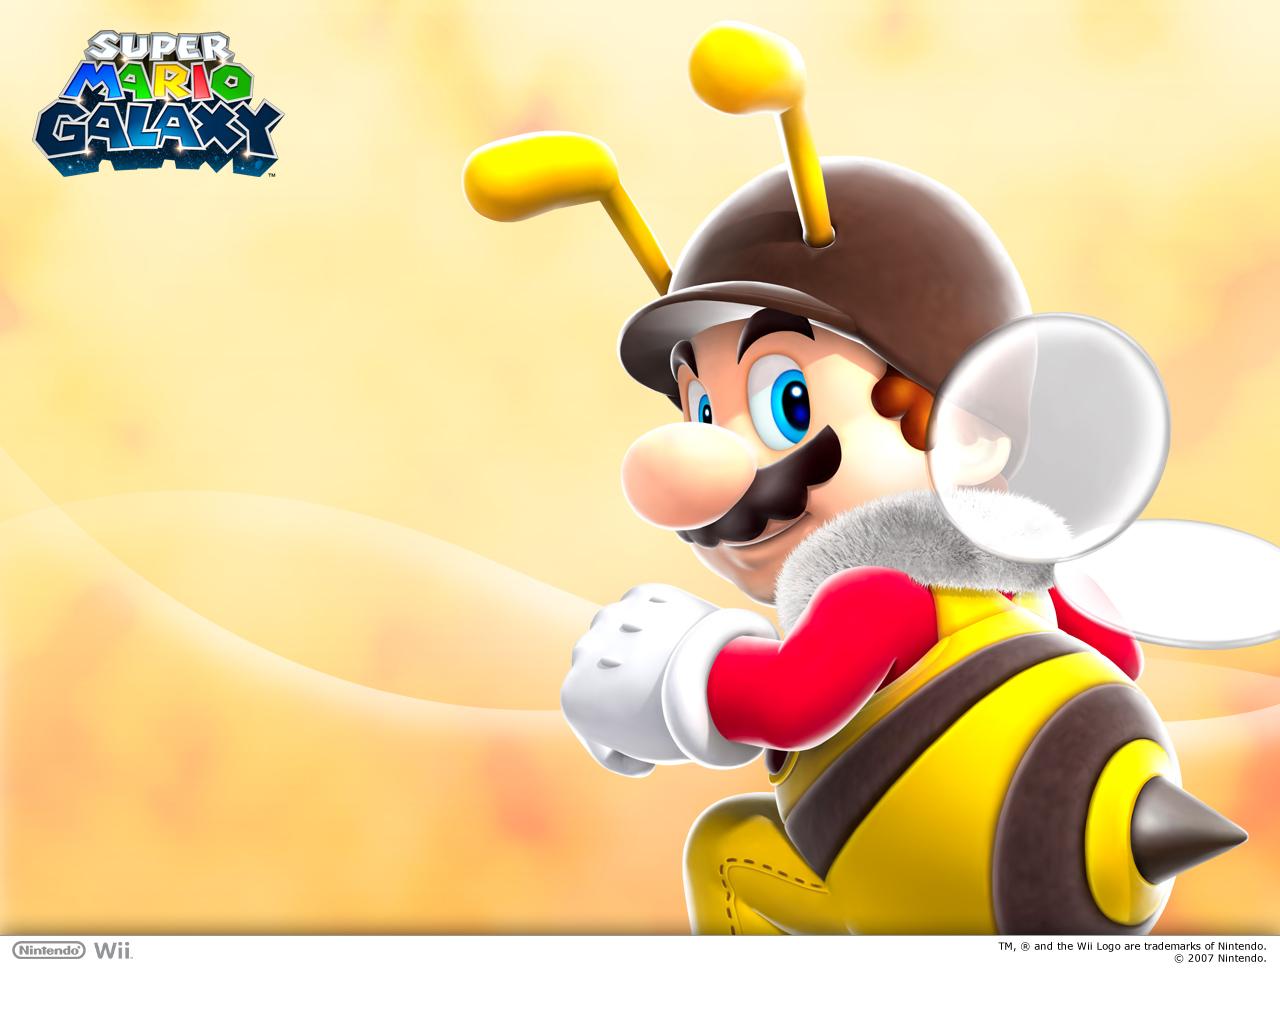 11. Bee Mario